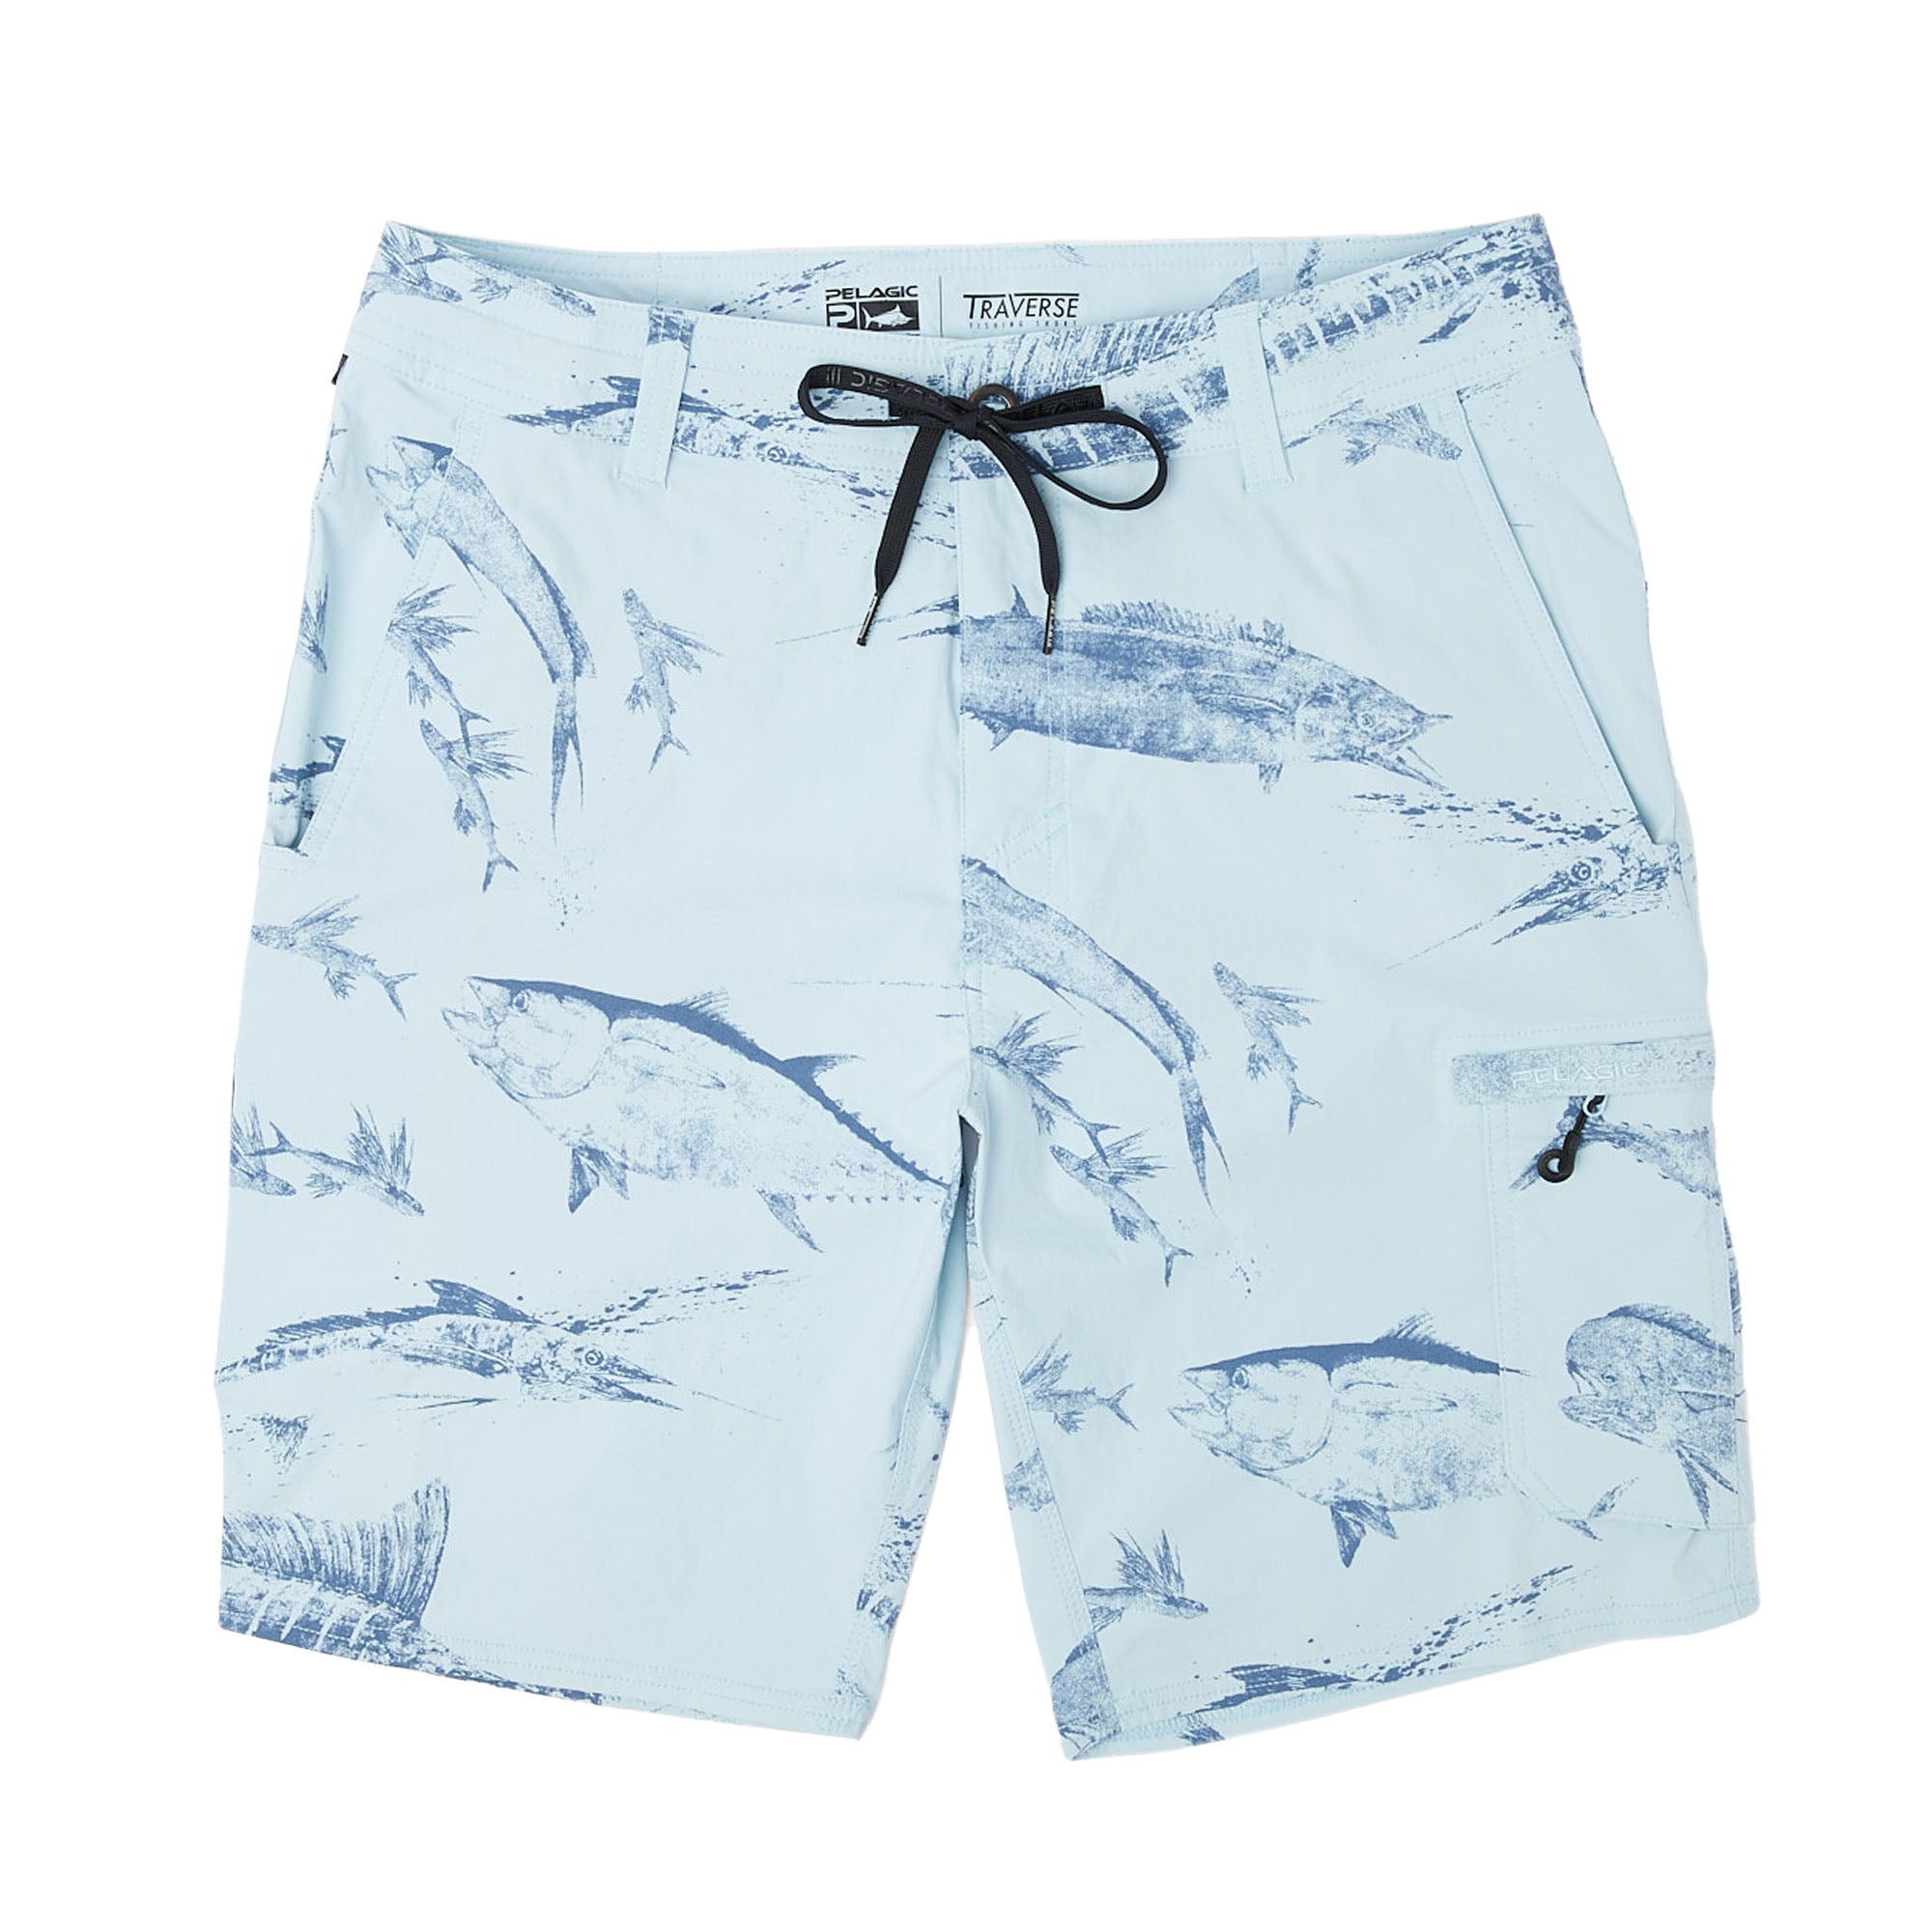 Pelagic Socorro Fishing Shorts for Men